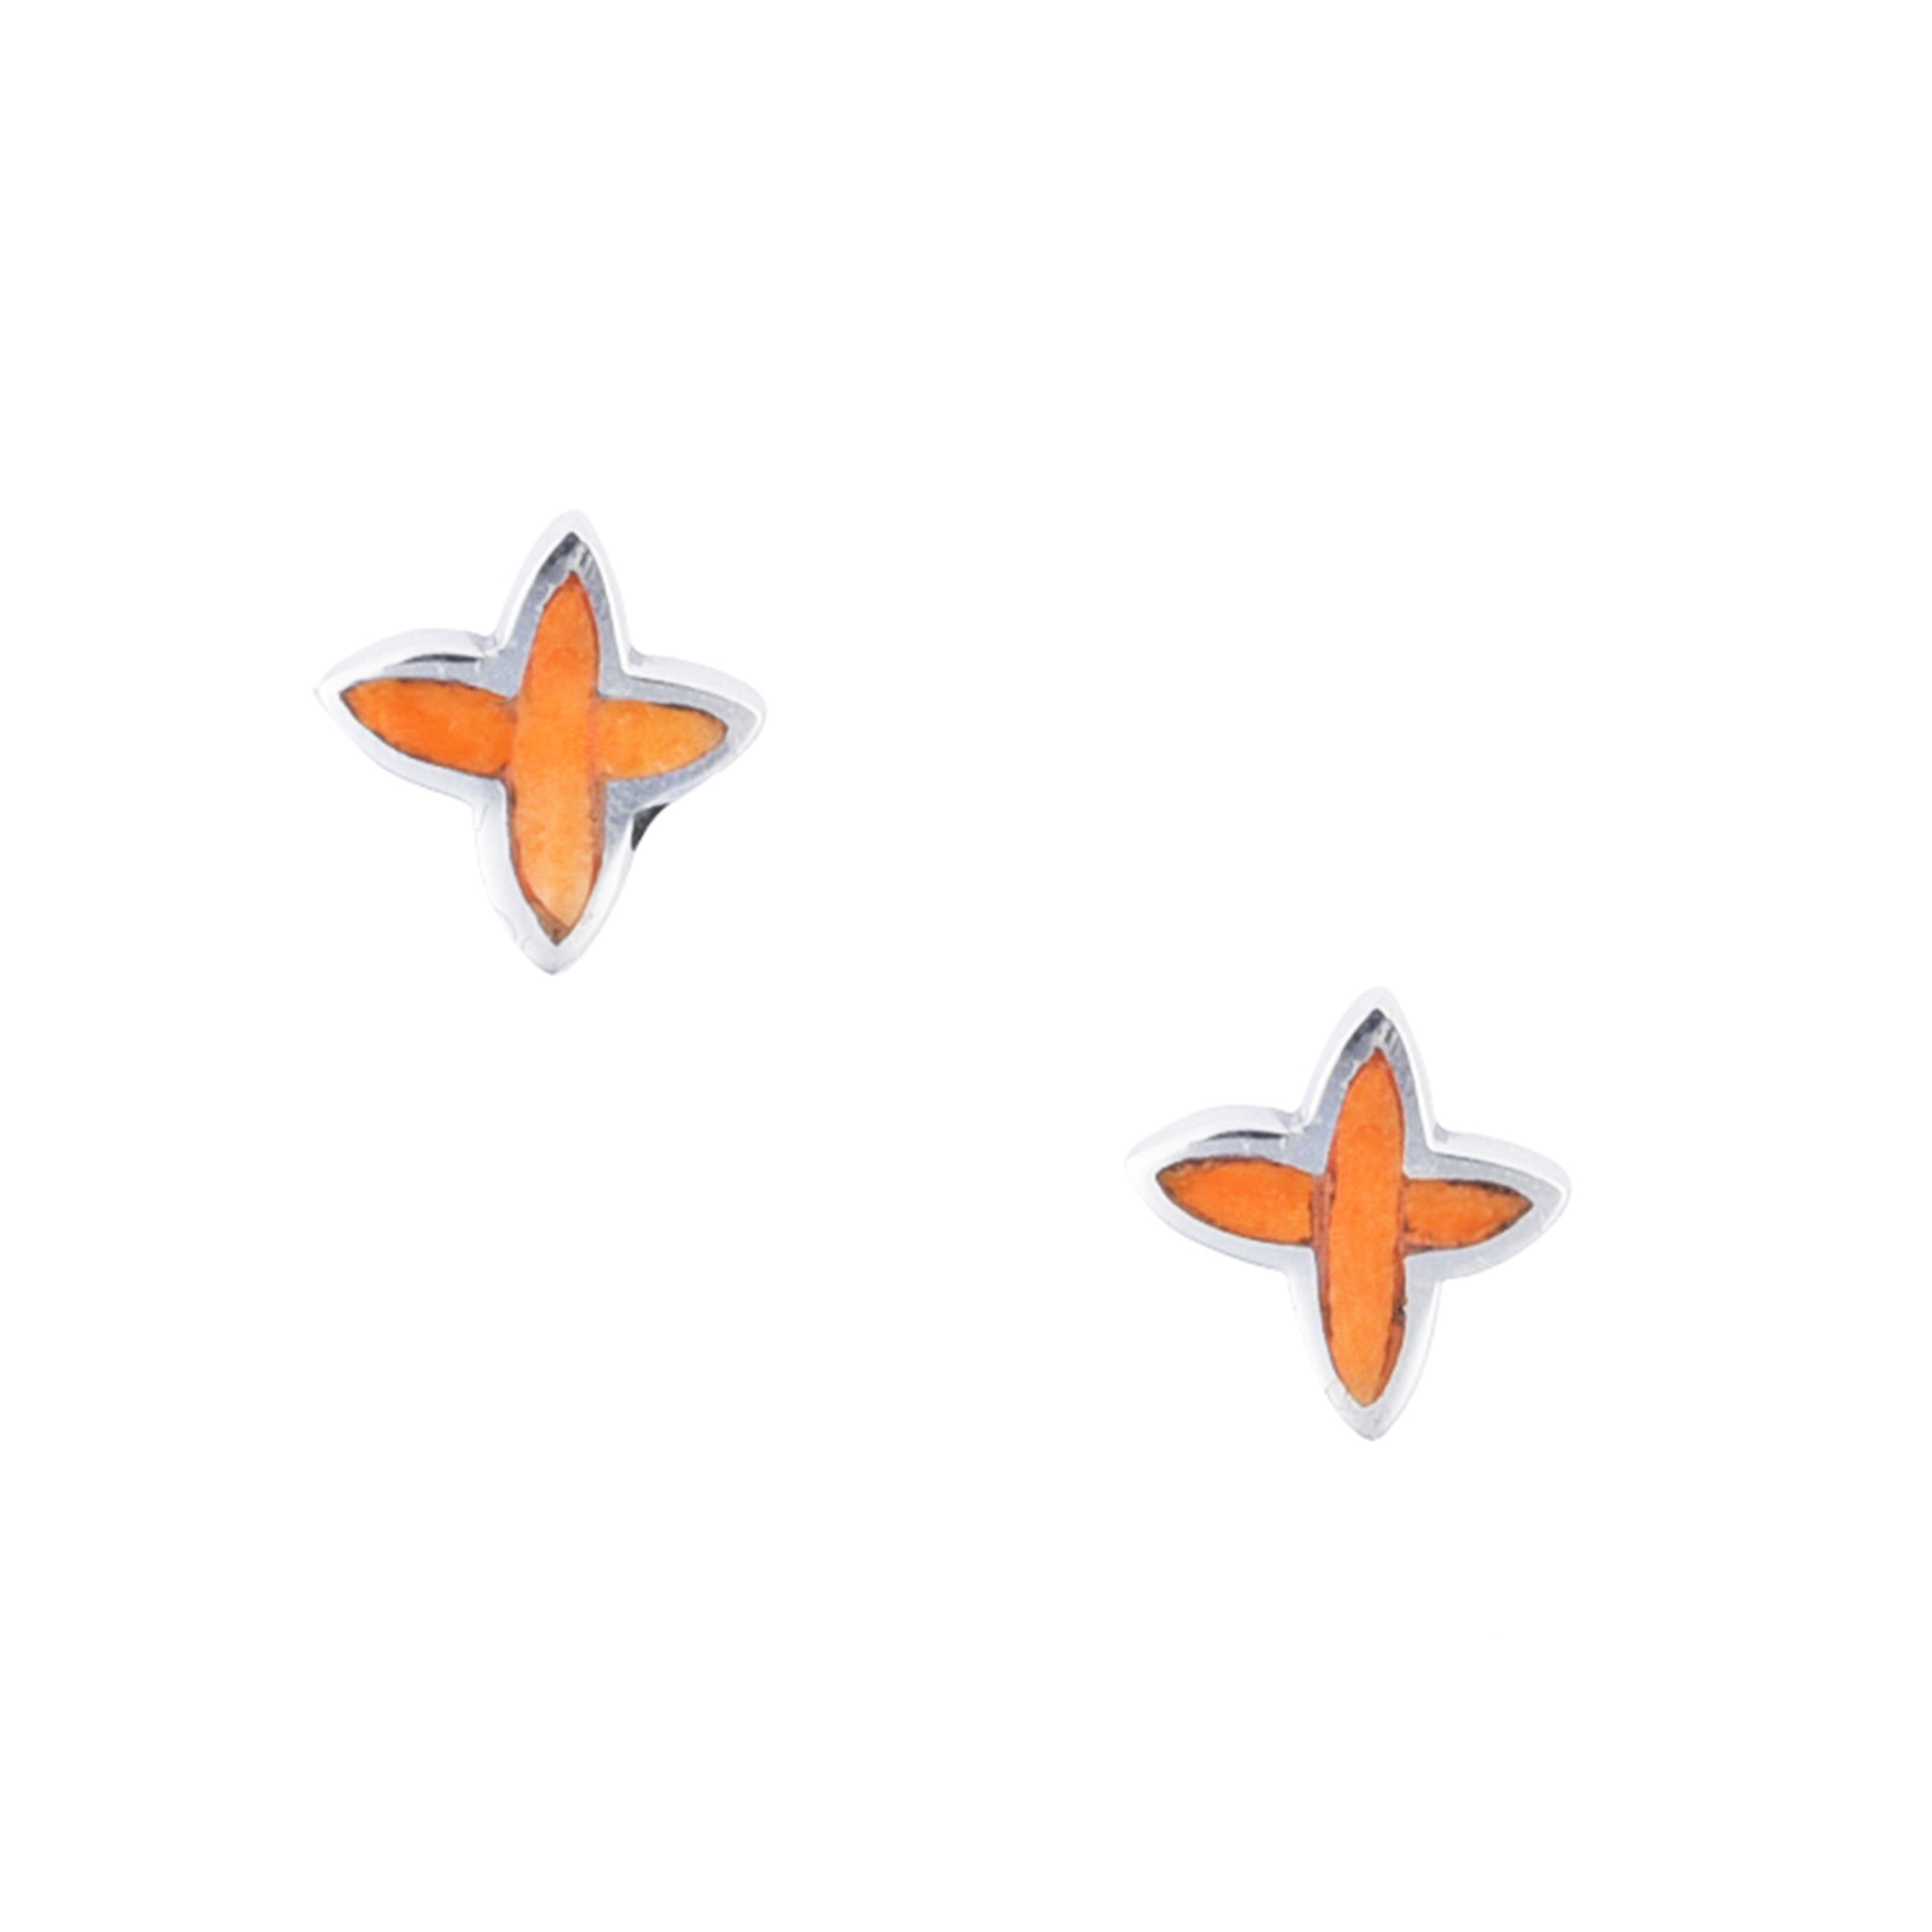 North Star Stud Earrings